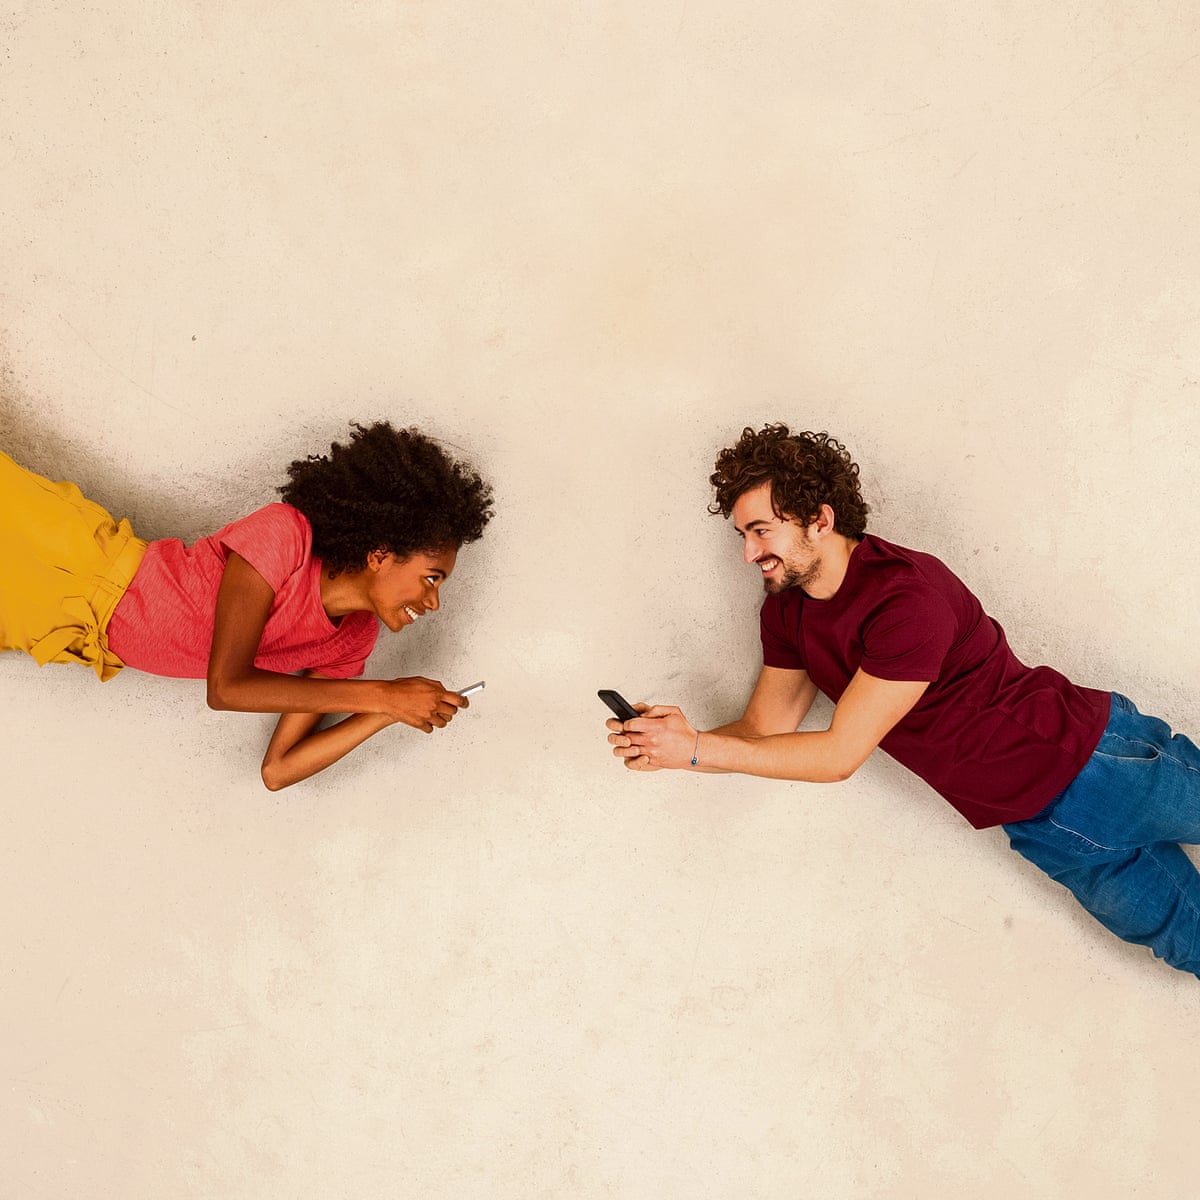 10 aplicații pentru dating, în caz că te-ai plictisit de Tinder - #diez